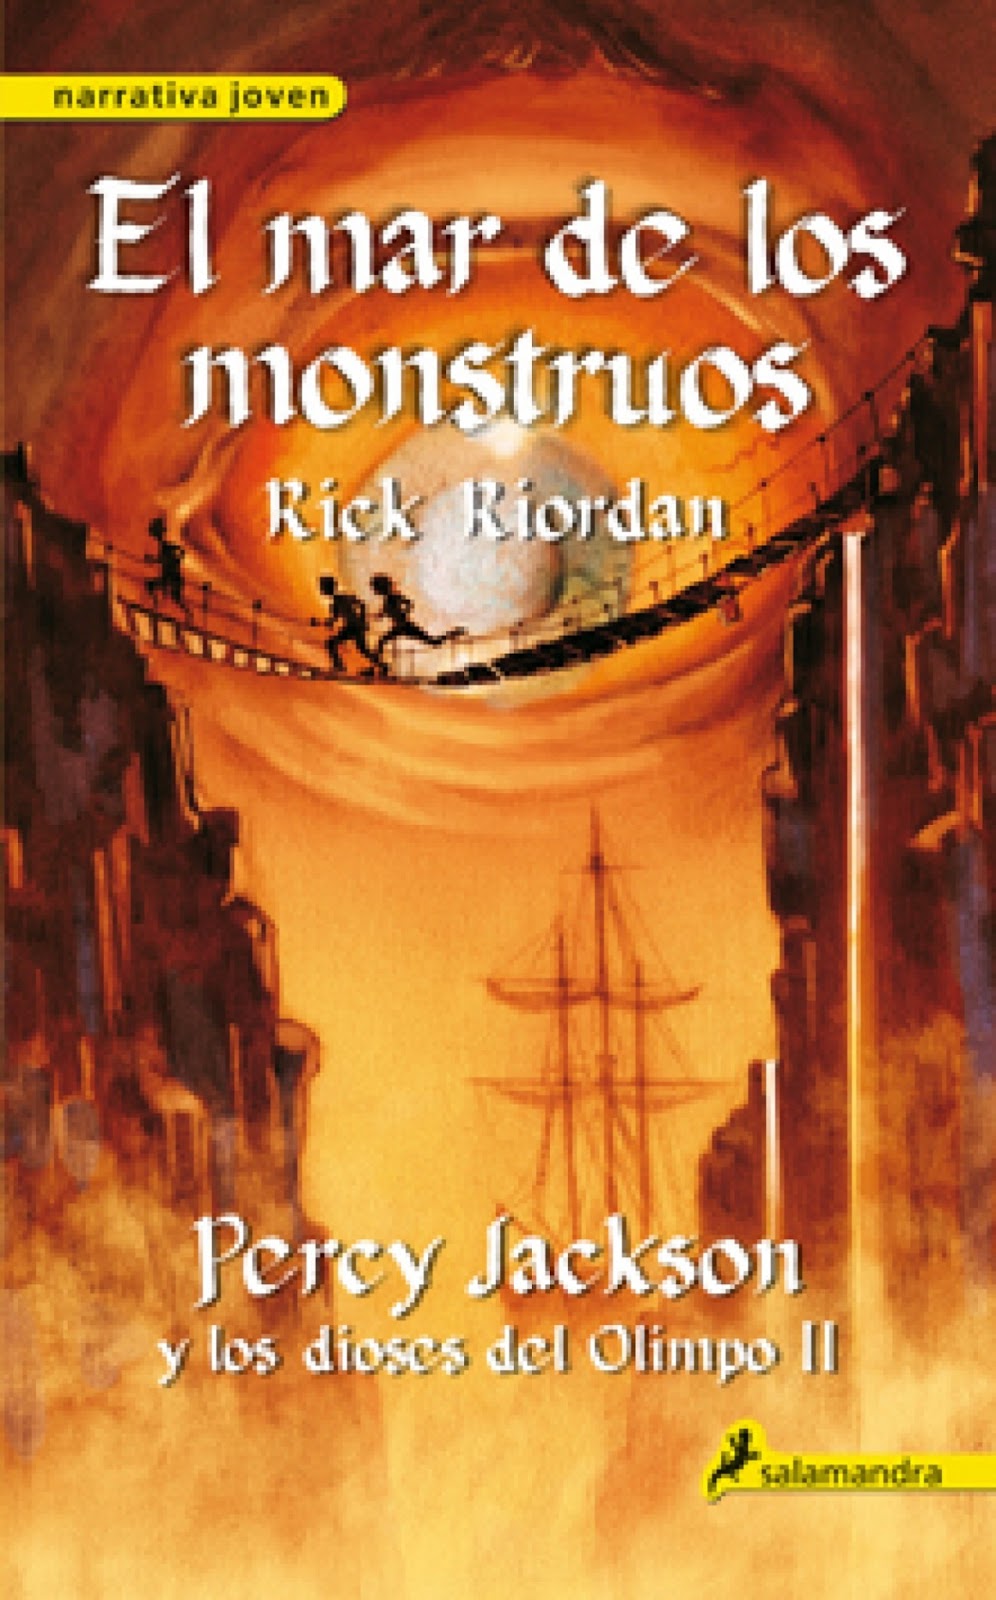 Descargar Libro Percy Jackson y el mar de los monstruos - Libros - El Mar De Los Monstruos Percy Jackson